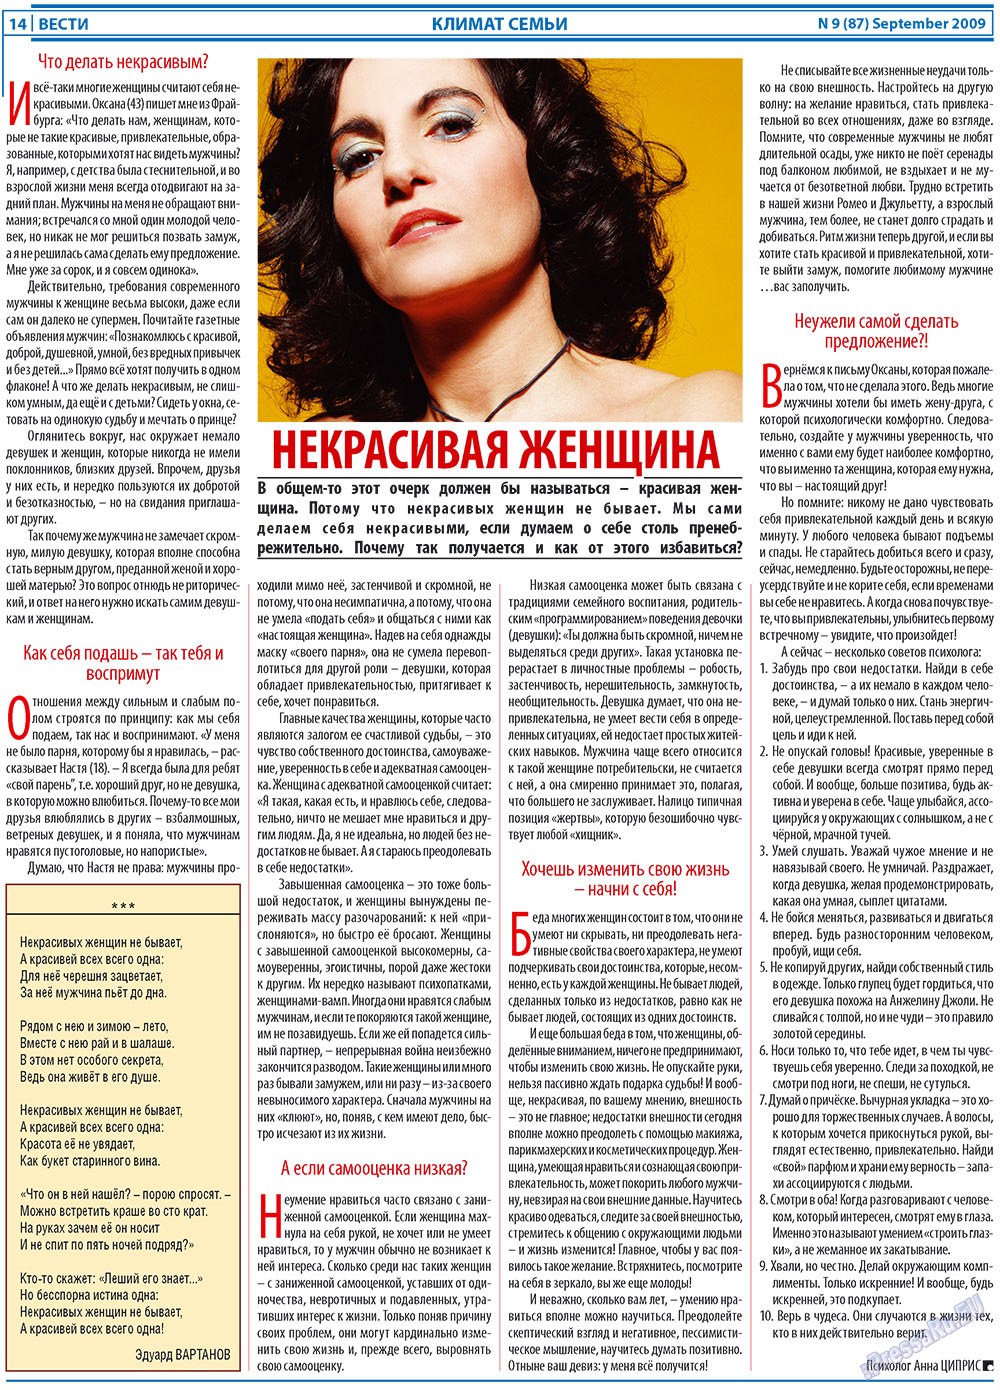 Вести, газета. 2009 №9 стр.14